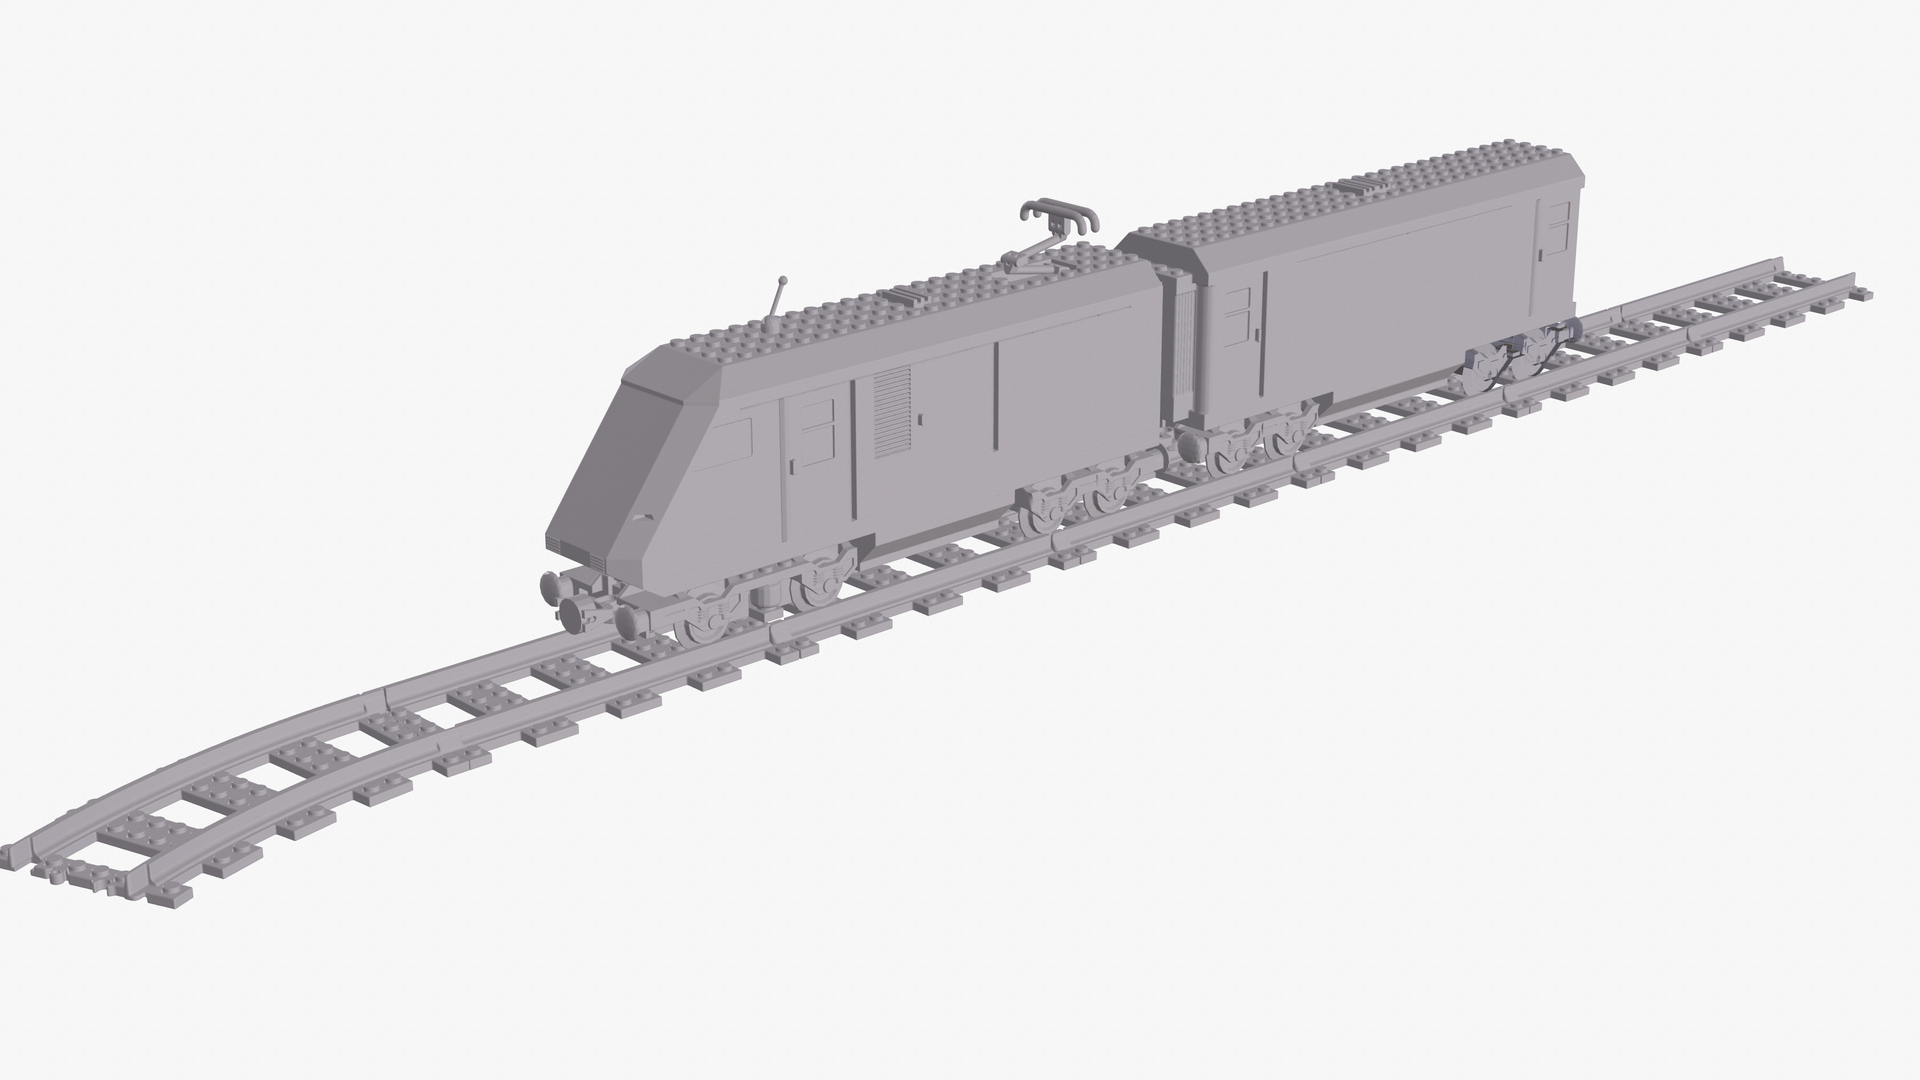 3d model - train 4558 Metroliner model - TurboSquid 1794635